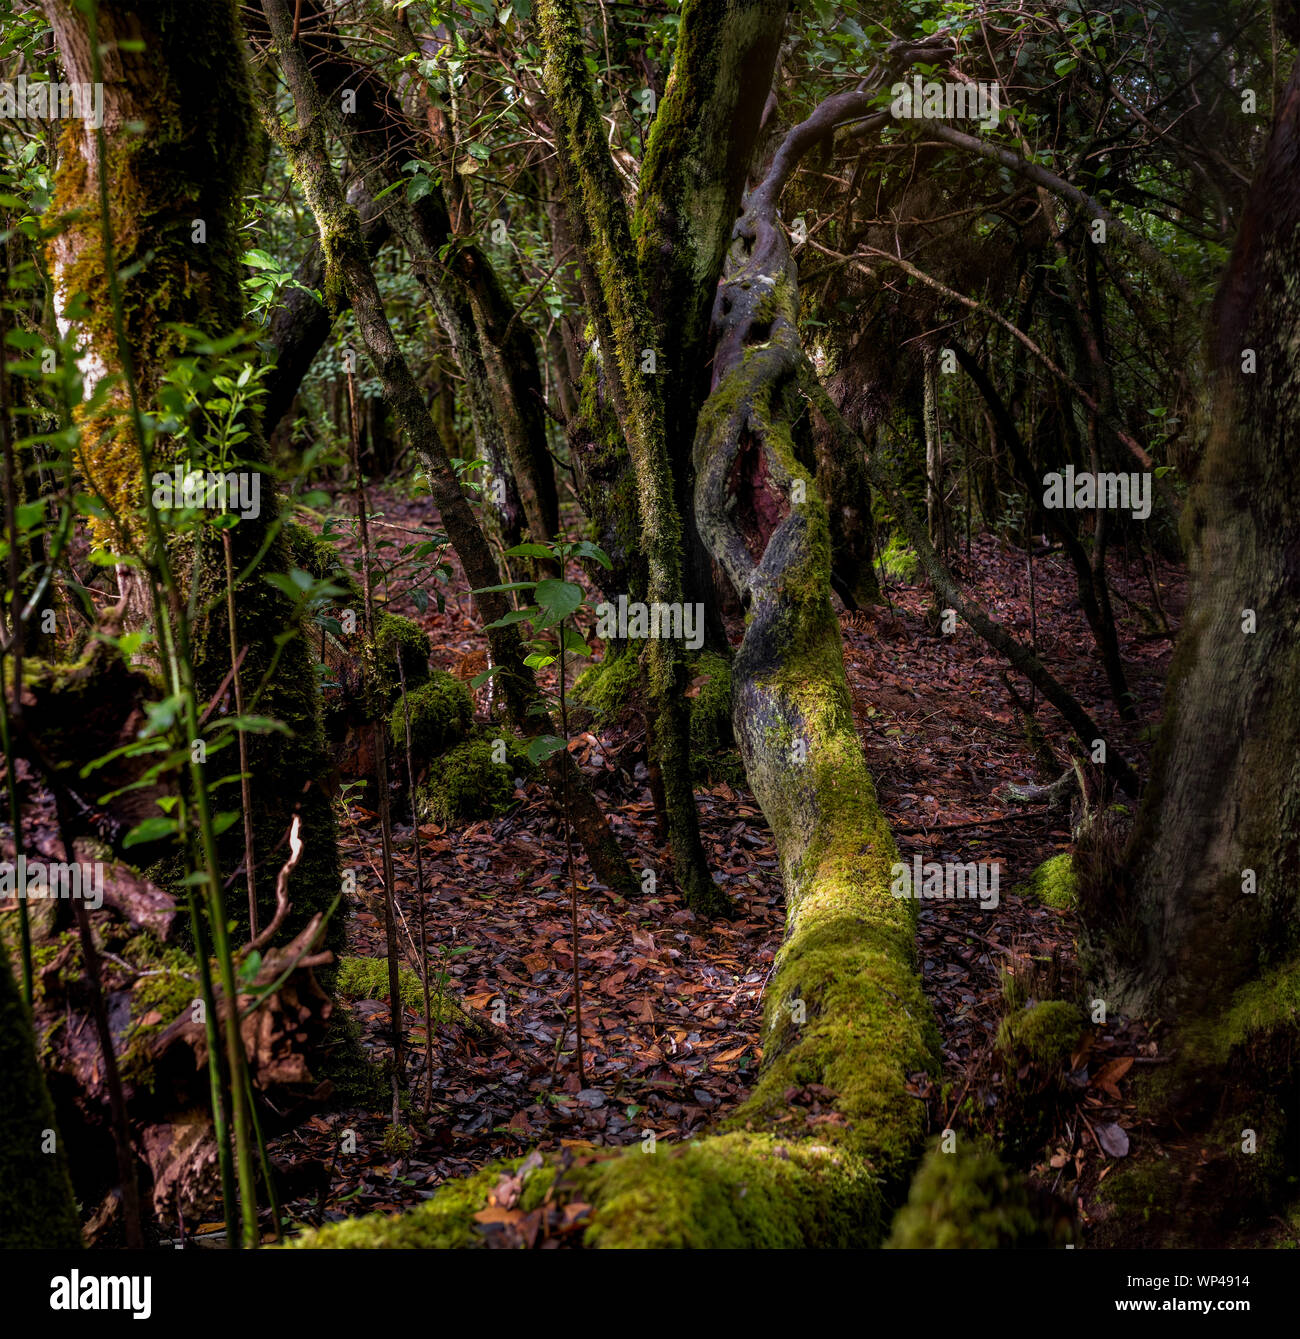 La Gomera, Kanarische Inseln, zentrale alte Laurisilva Wälder auf dem zentralen Berg mit vielen endemischen Arten. Bäume bedeckt von Moosen und Flechten Stockfoto